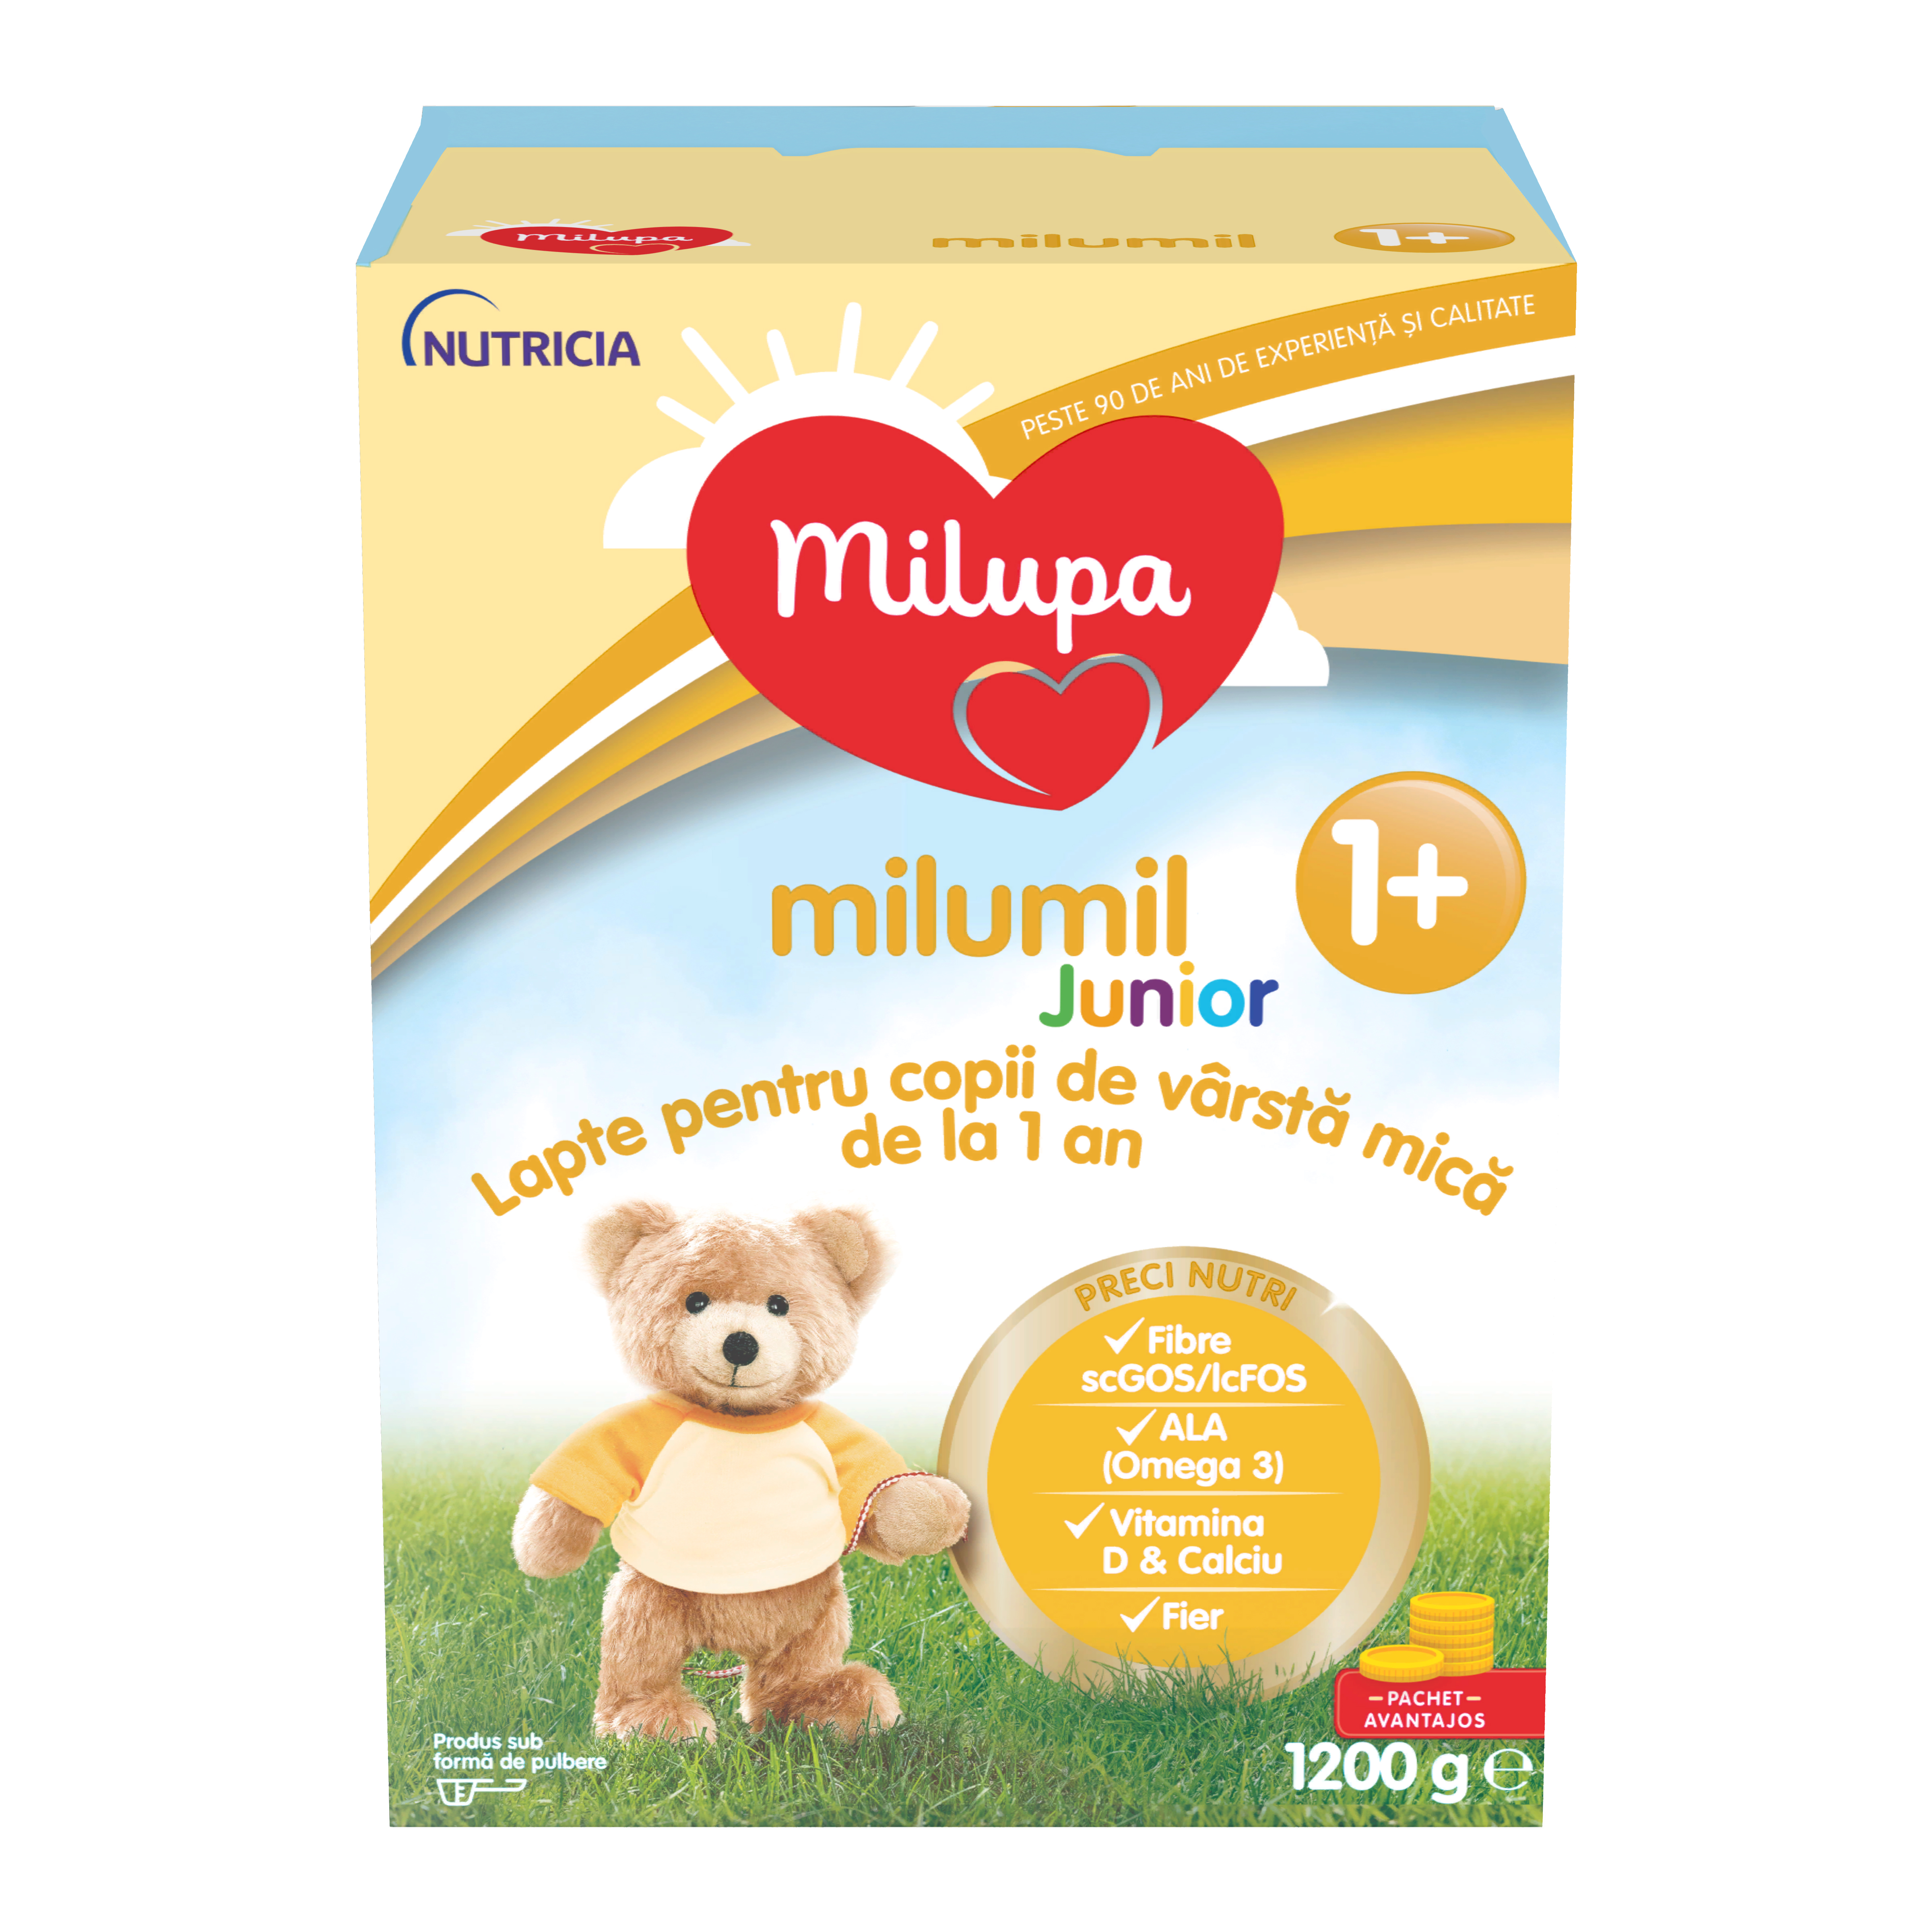 Formule de lapte praf - Milupa Milumil Junior 1+, lapte praf de la 1 an, 1200 grame, medik-on.ro